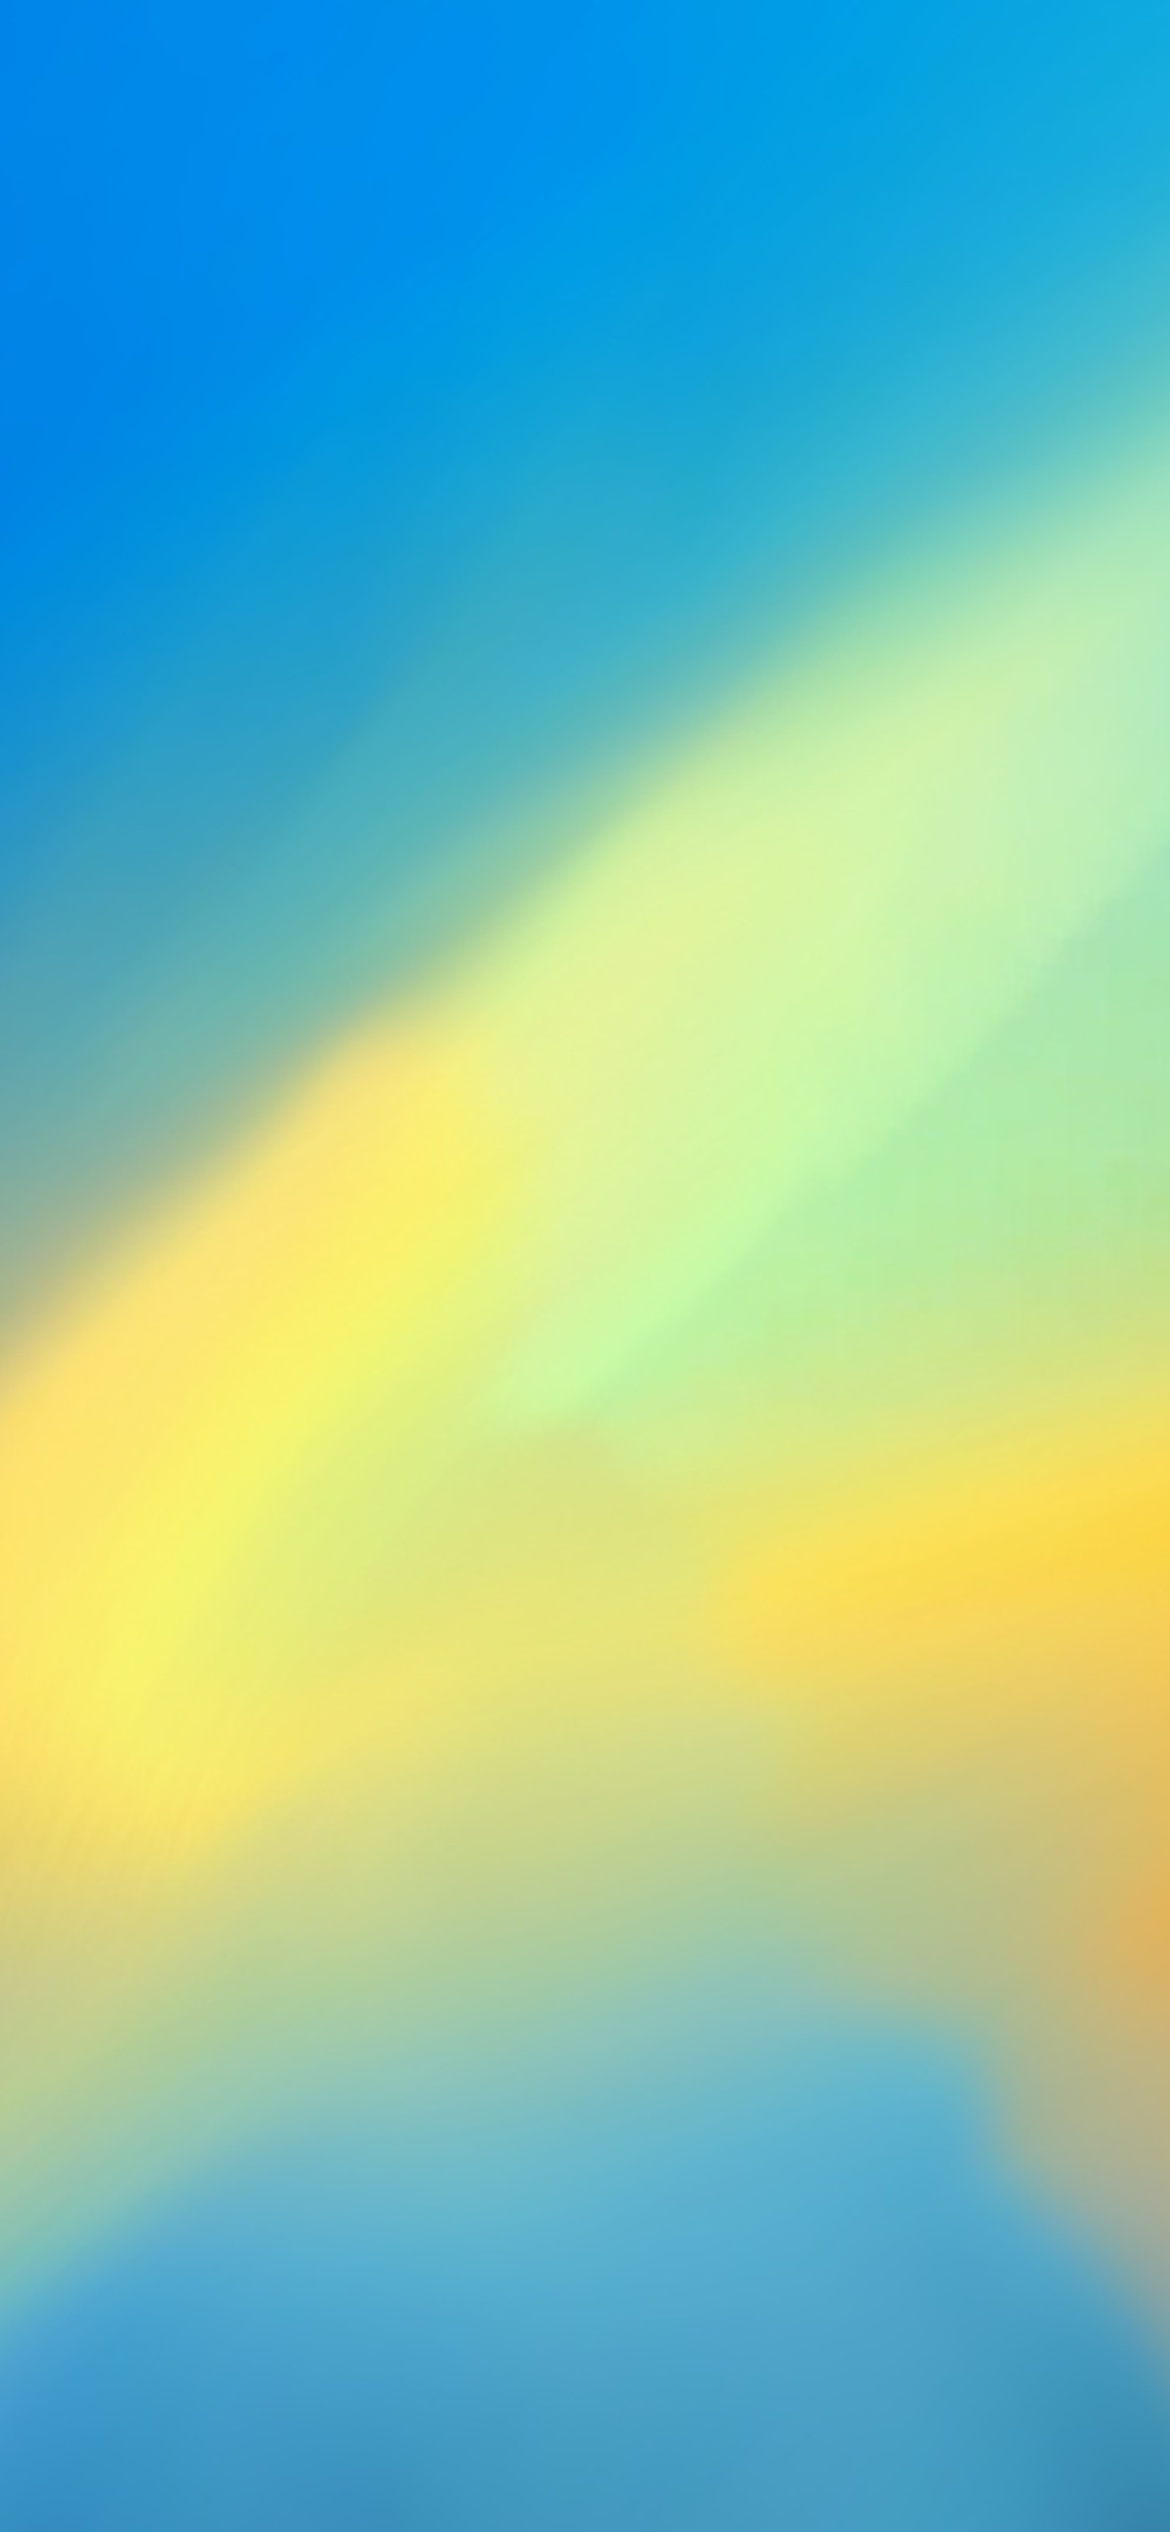 Das Multicolored Glossy Wallpaper 1170x2532